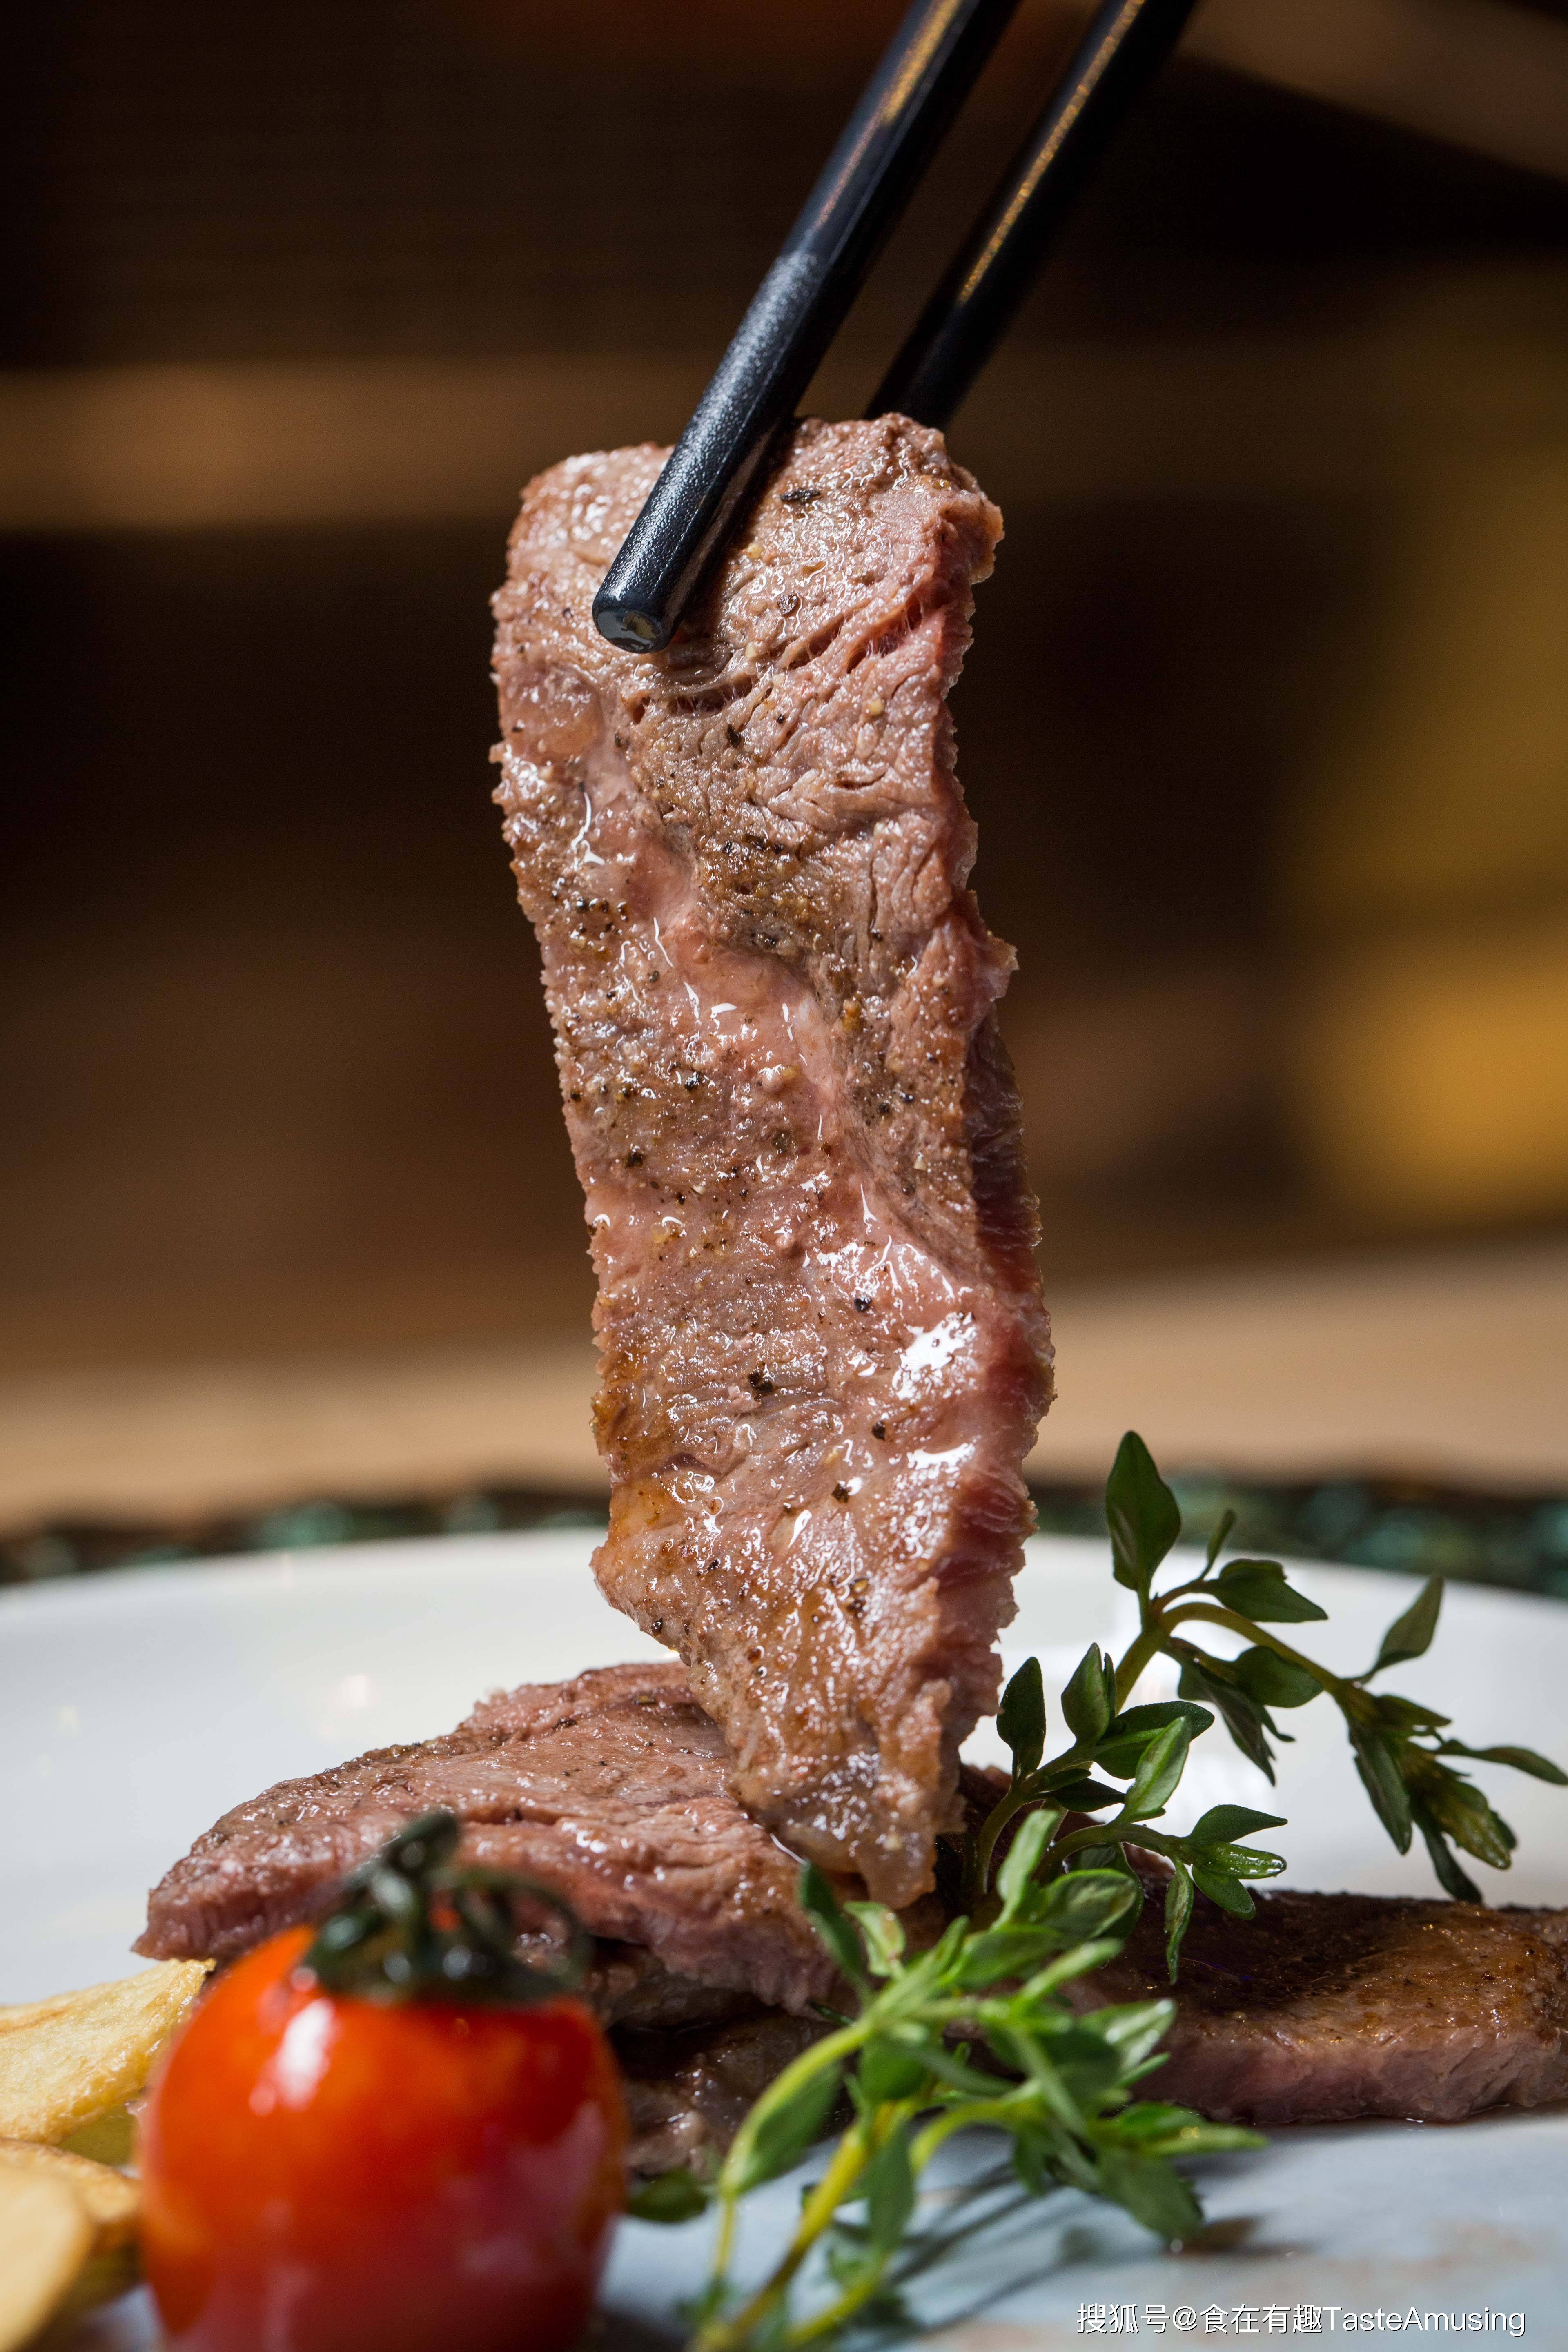 大菊g铁板烧丨澳洲牛肉也是很讲究的